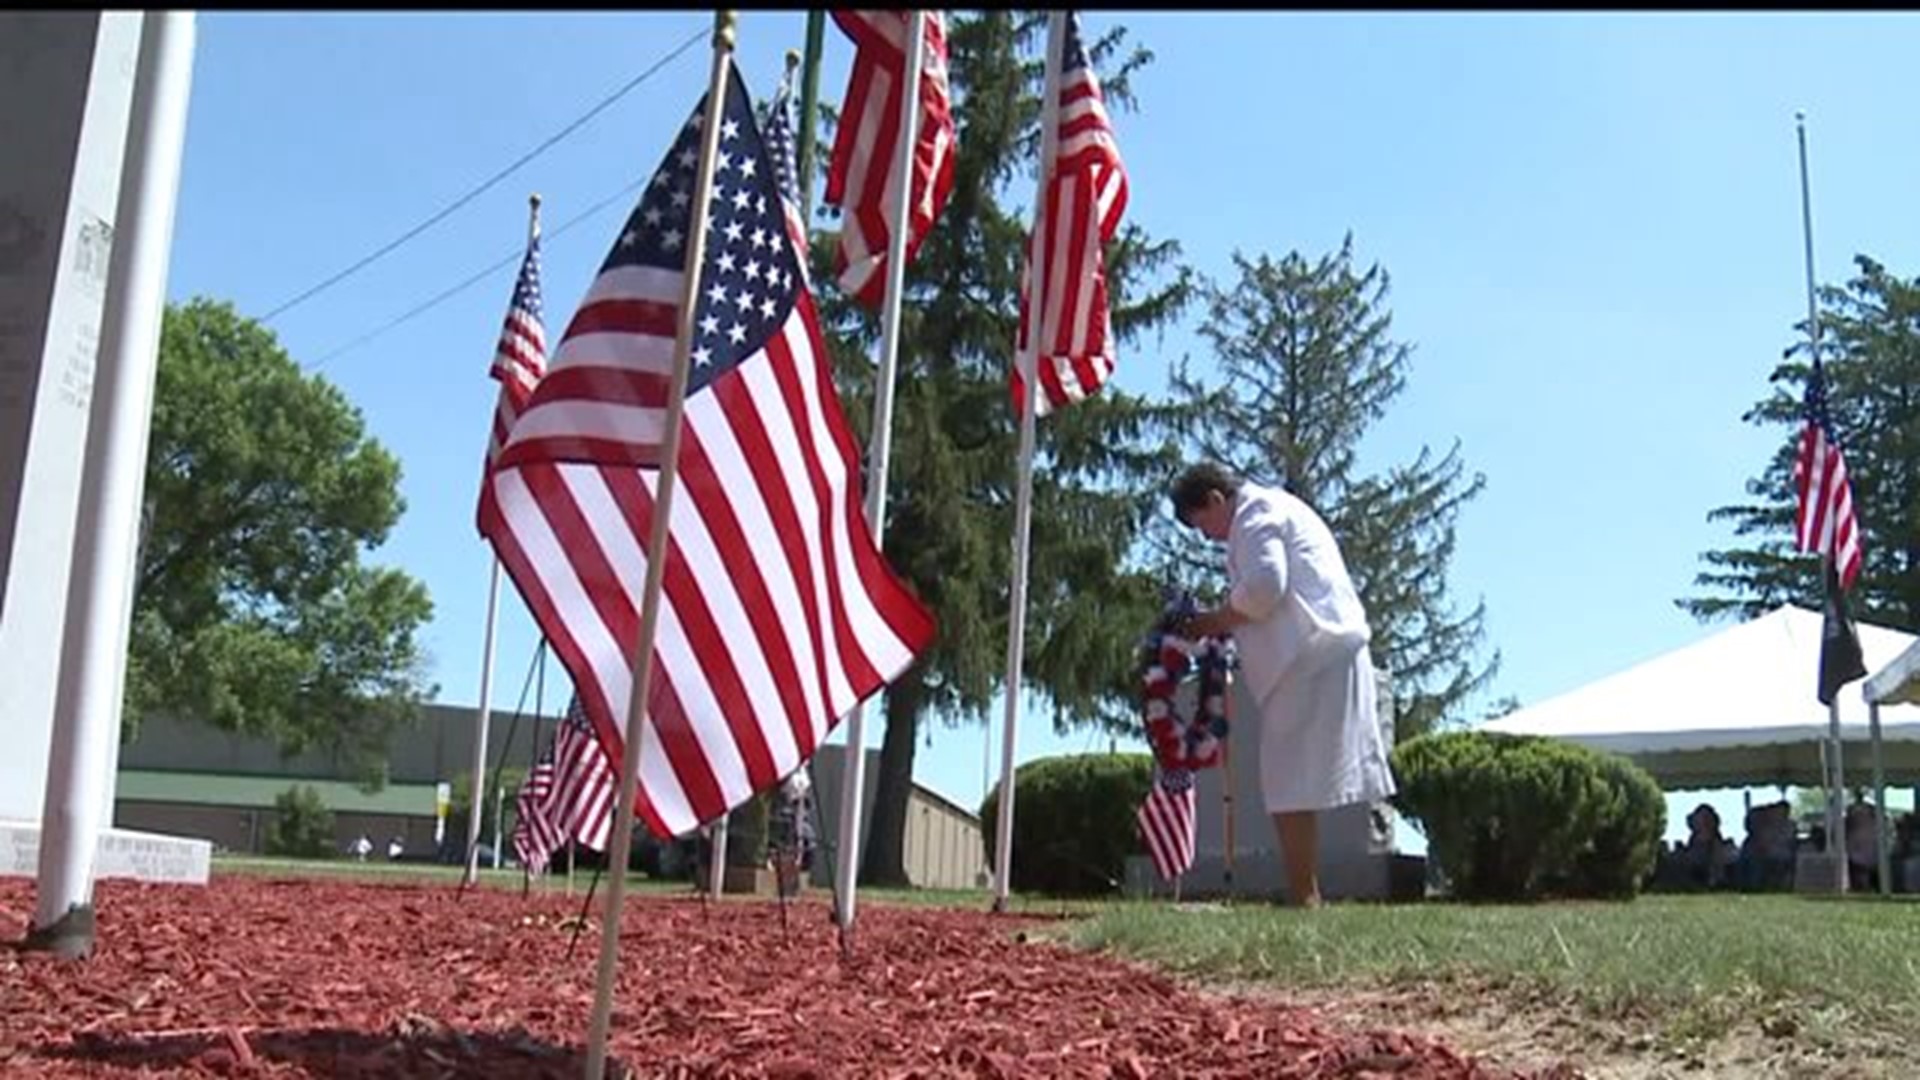 Honoring Veterans this Memorial Day